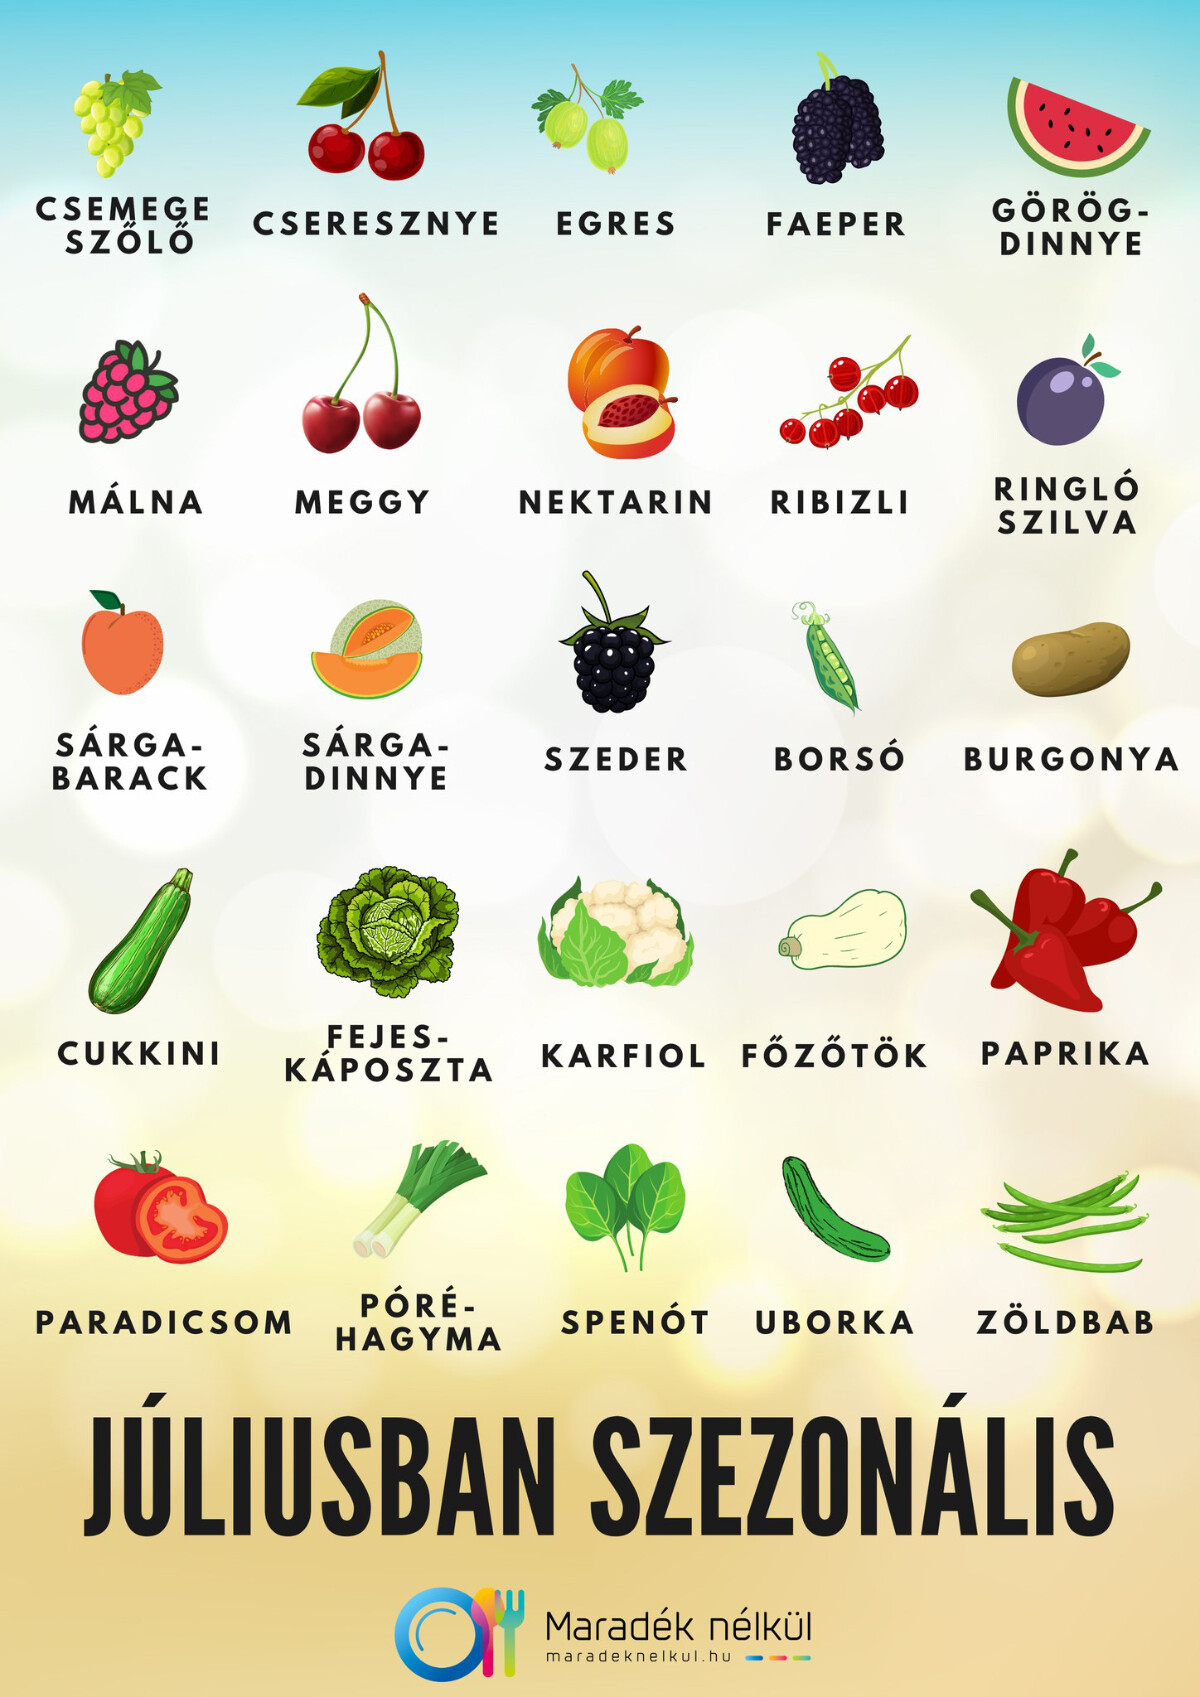 júliusban szezonális gyümölcs és zöldség